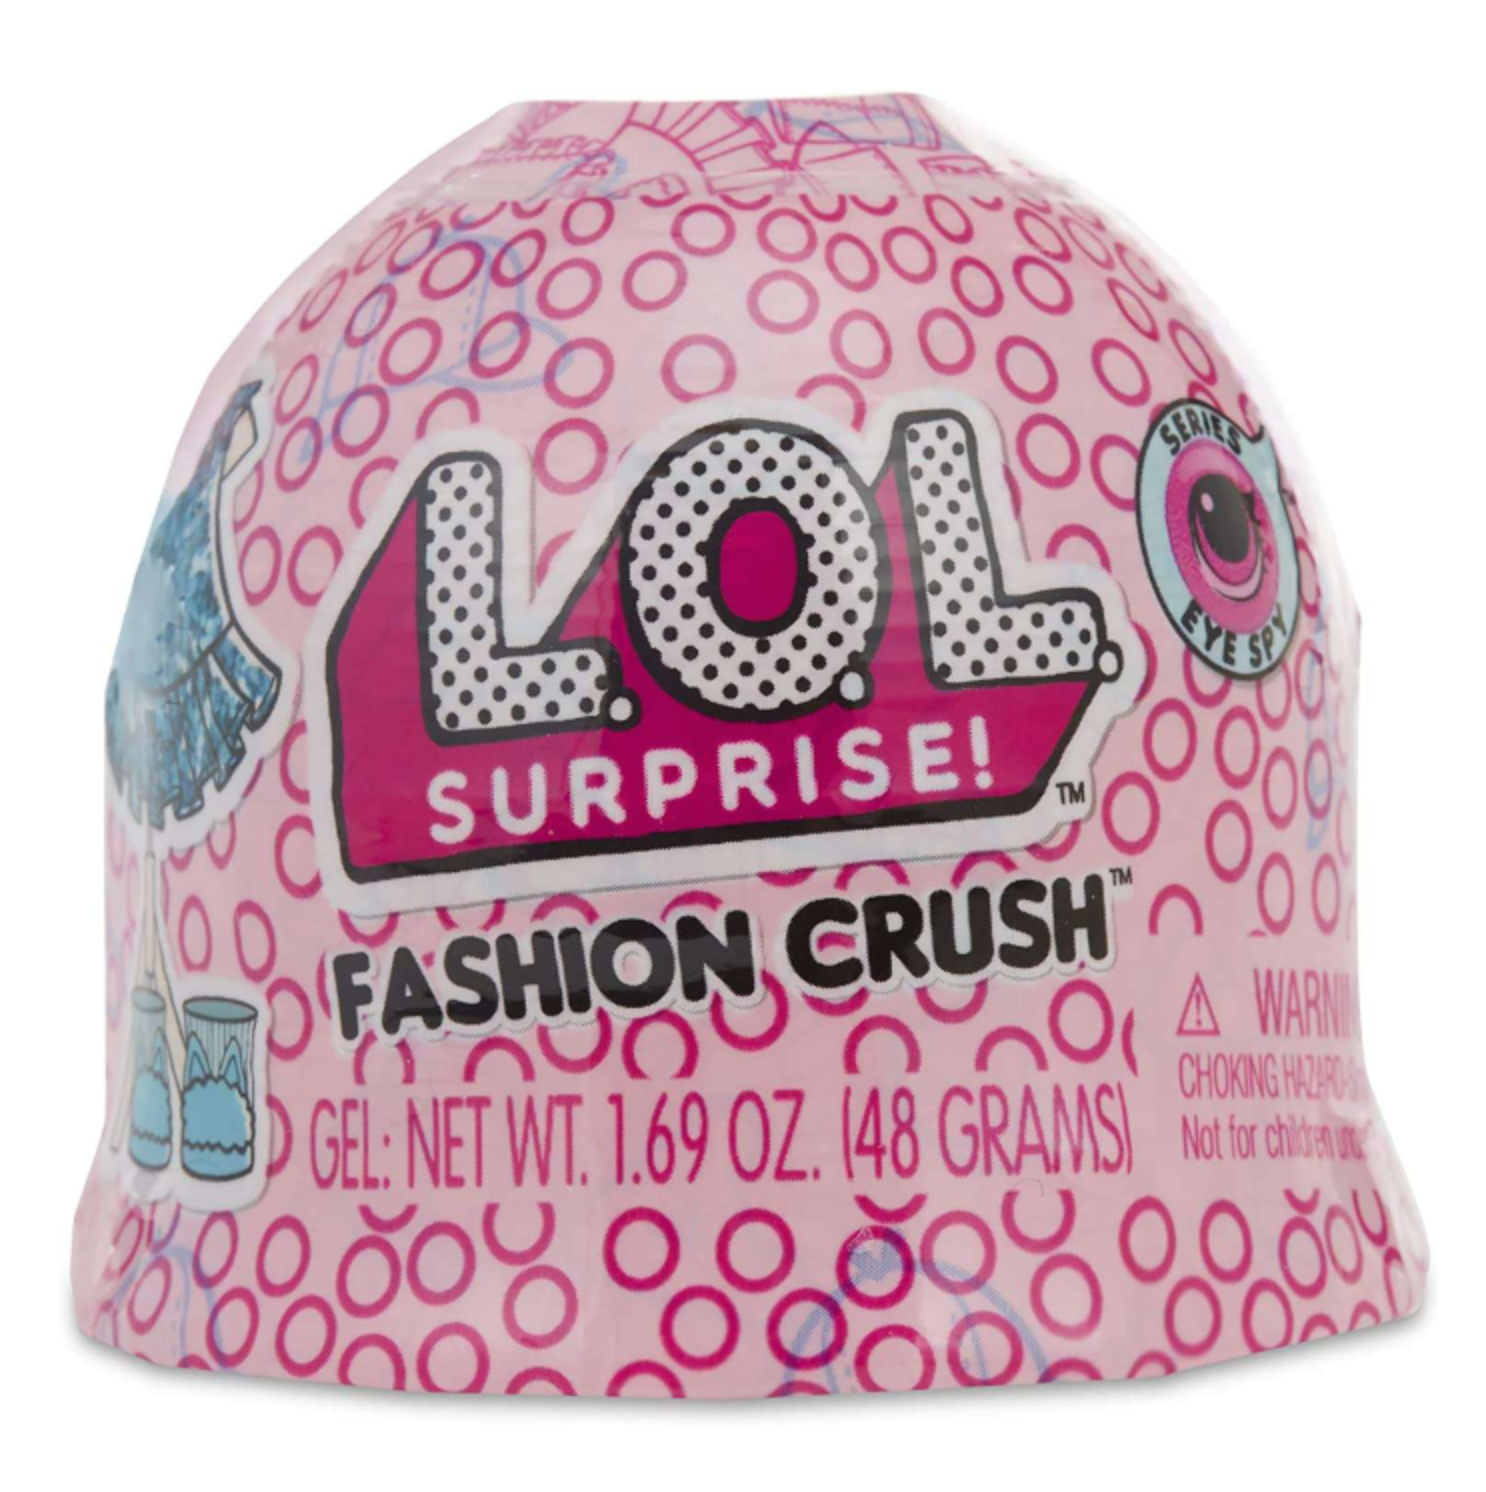 L.O.L. Surprise! Fashion Crush akcesoria dla lalek